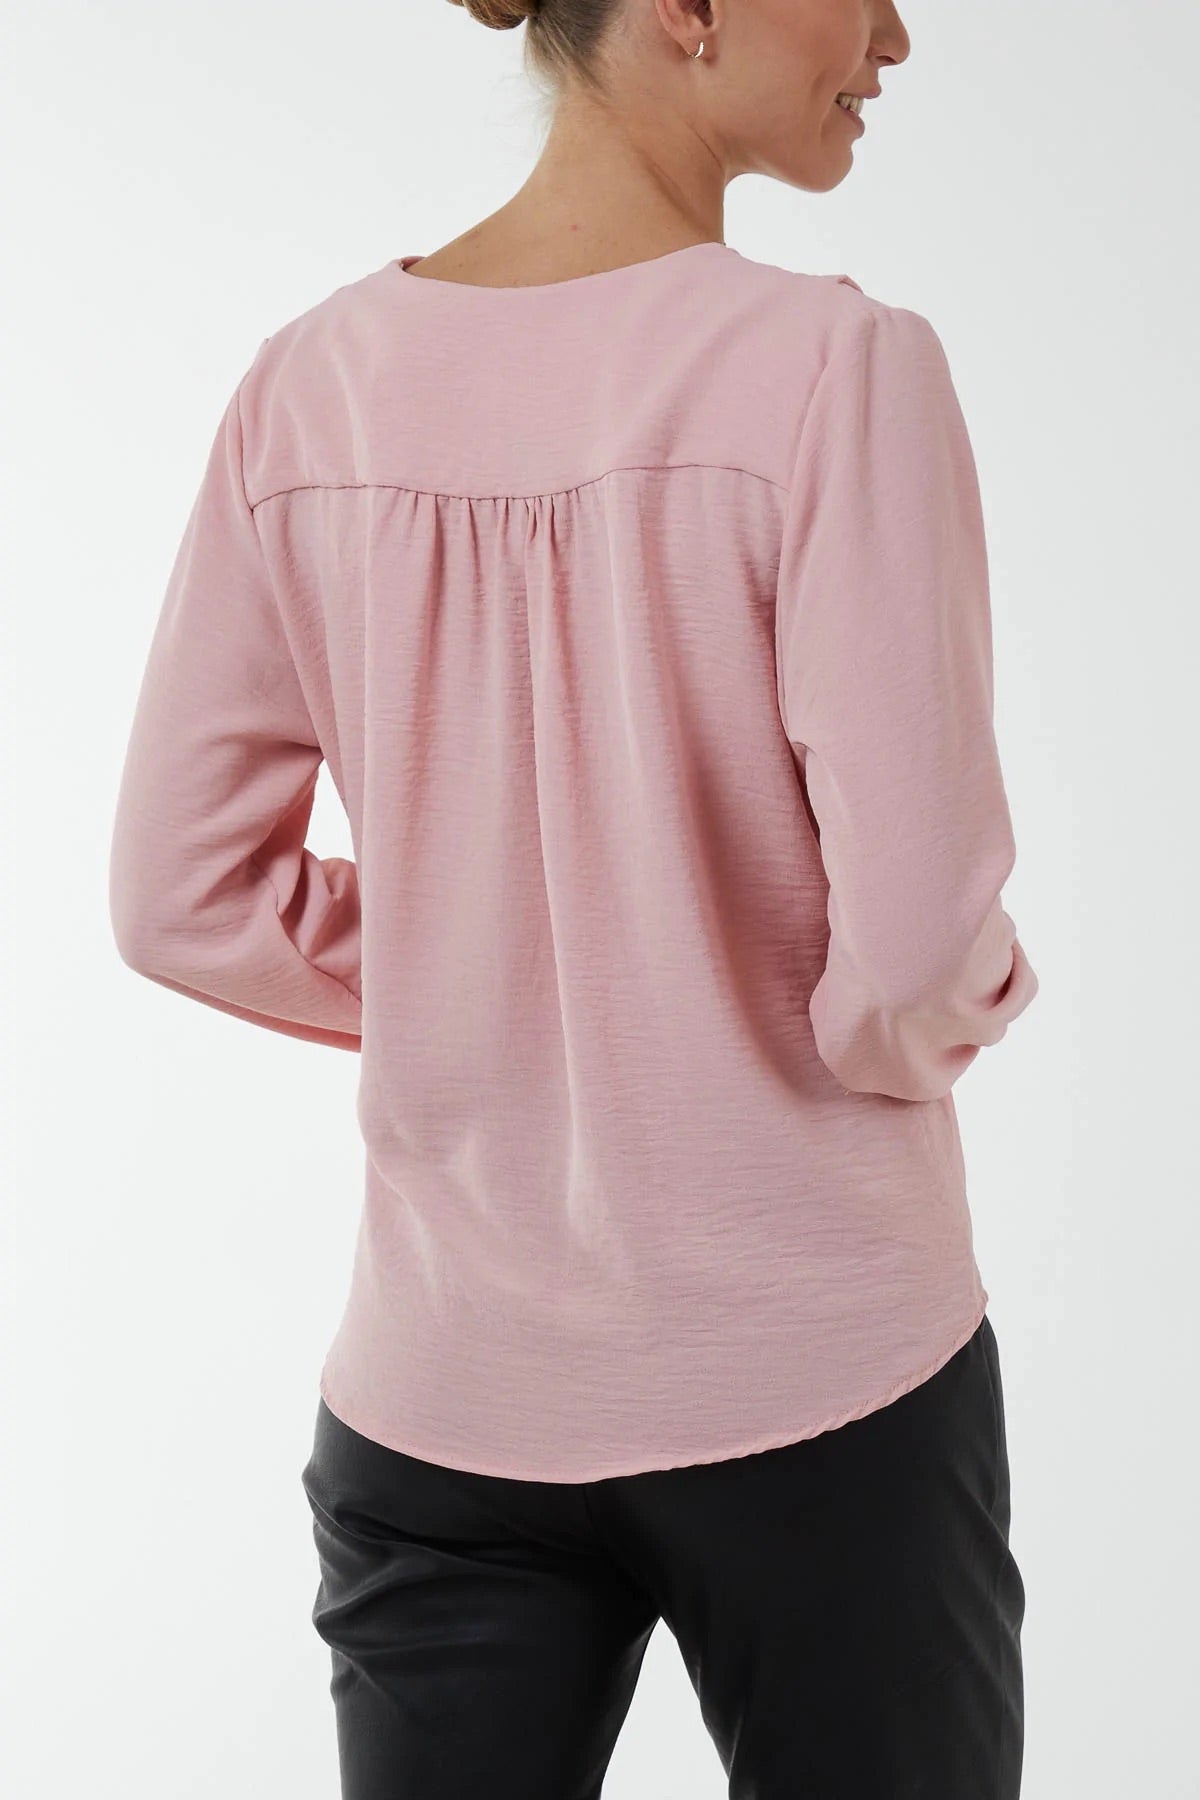 Wrap Front Blouse - Blush Pink